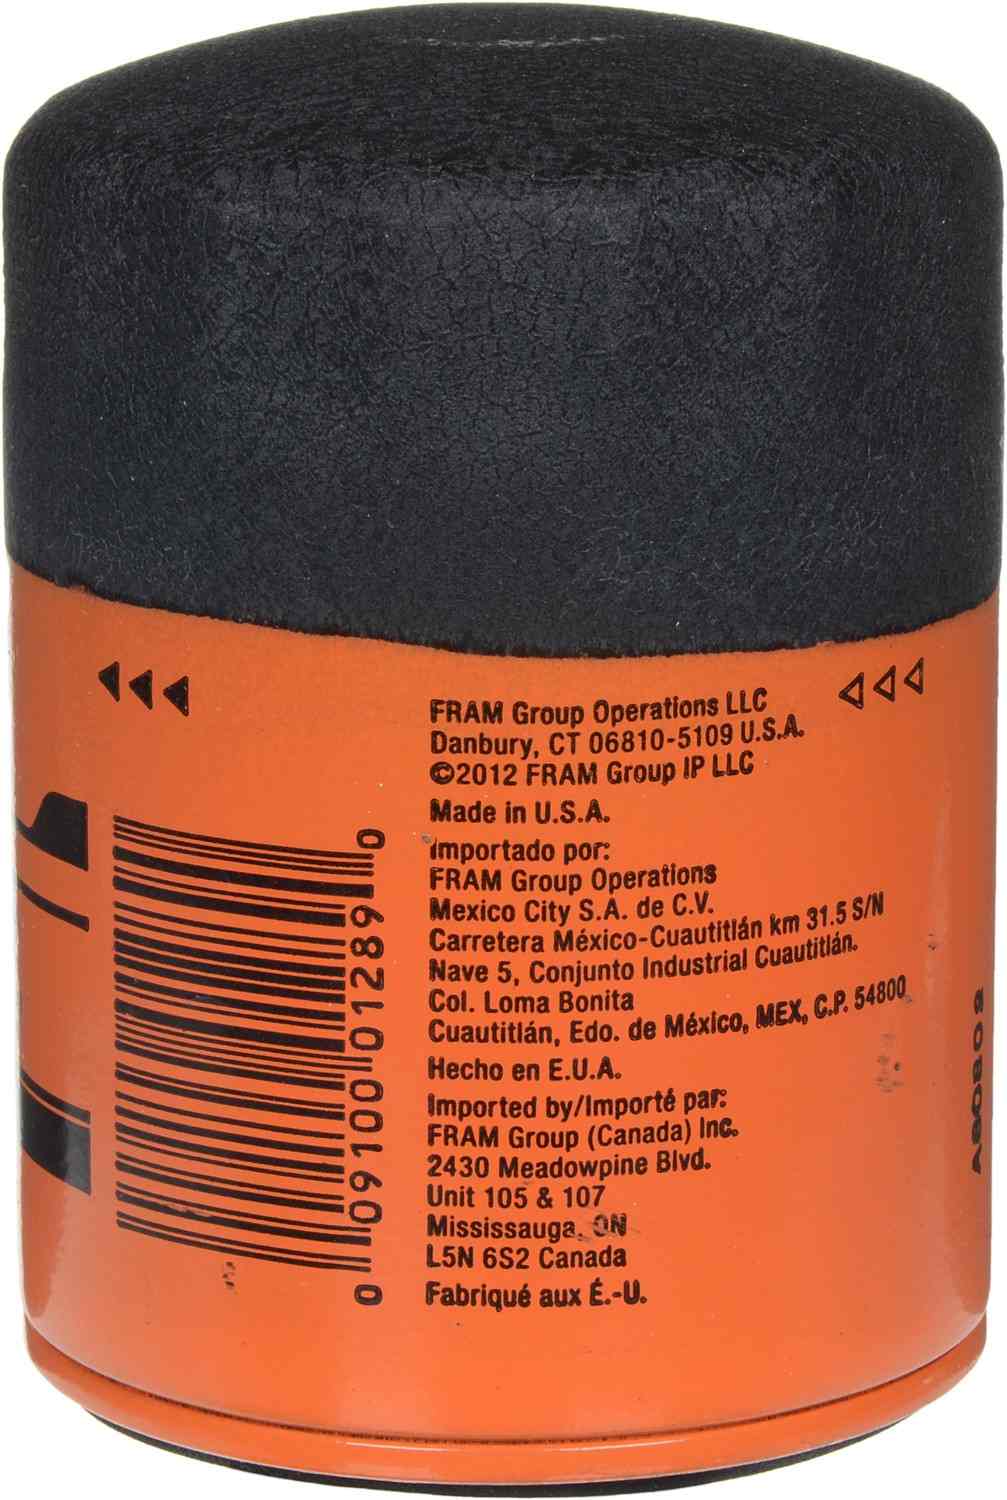 FRAM Engine Oil Filter PH8316